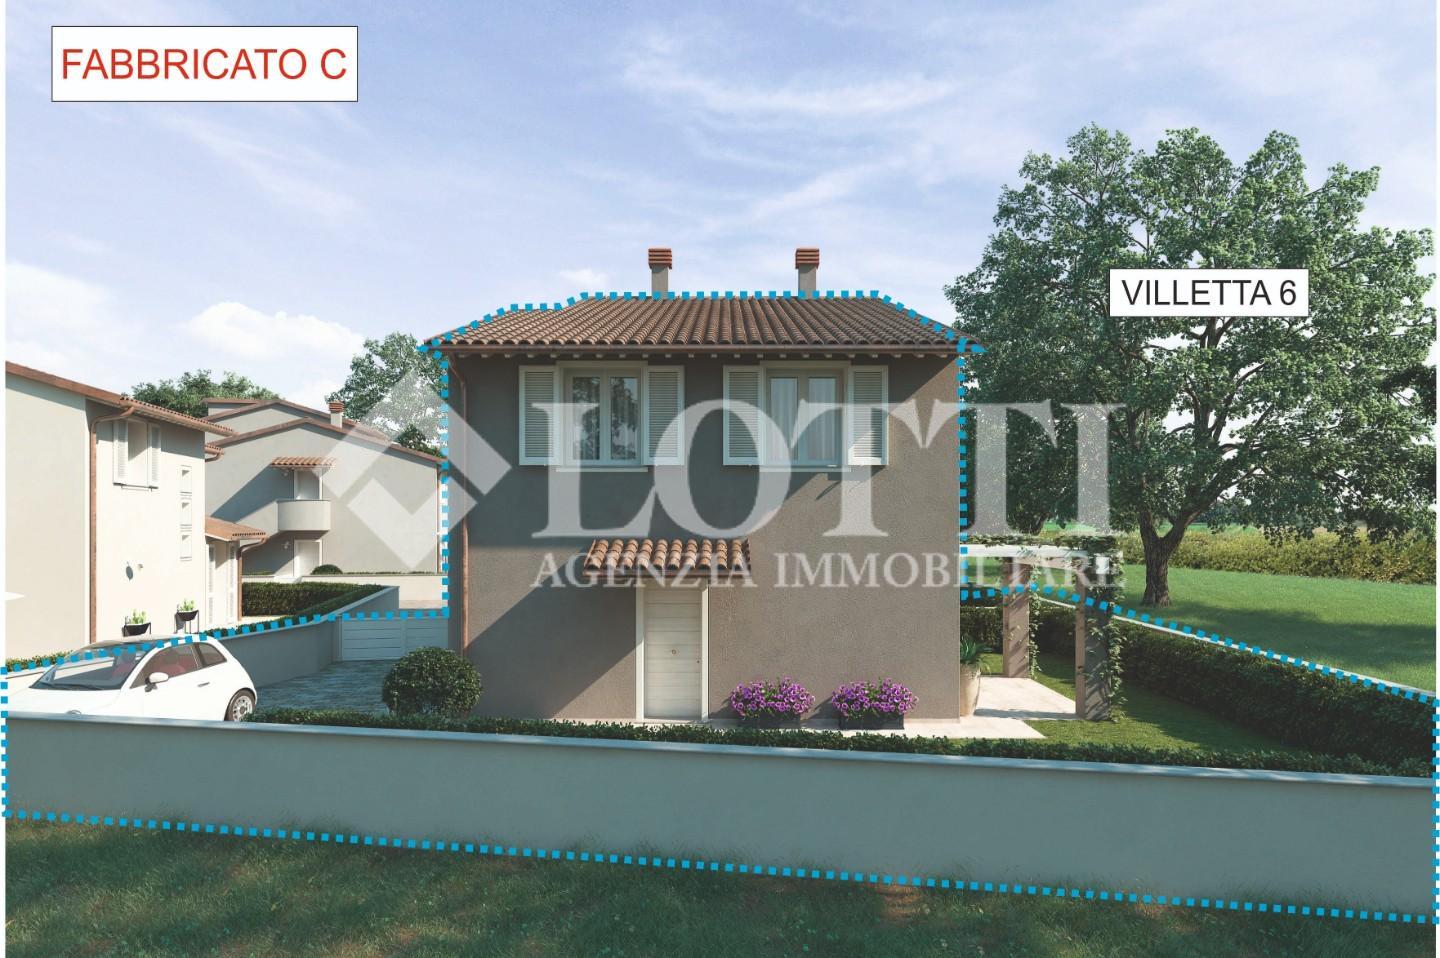 Semi-detached house for sale in Oltrarno, Calcinaia (PI)